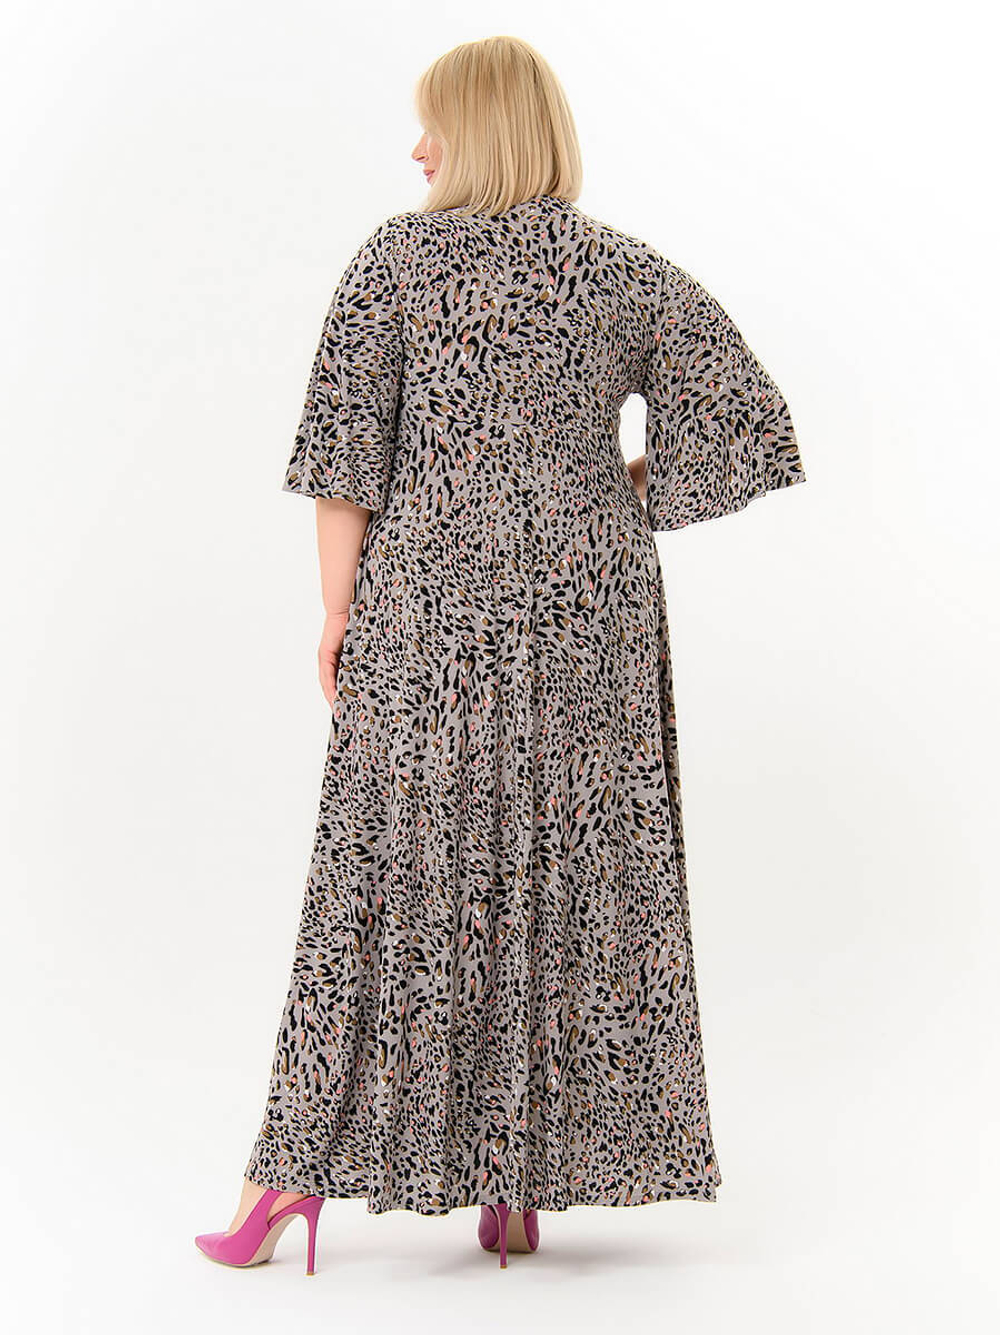 Платье с разрезом, леопардовый принт